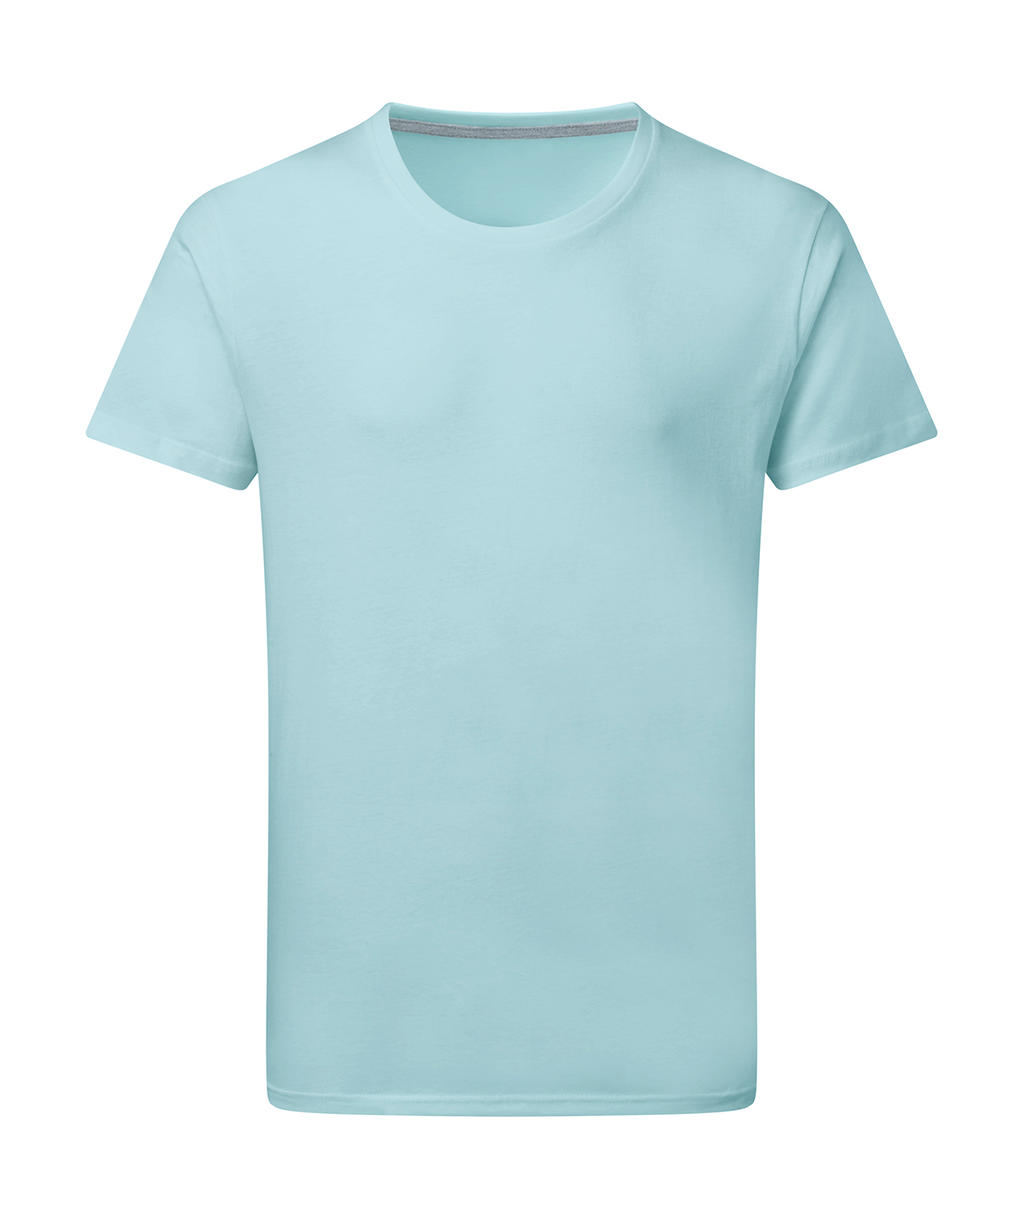 Dokonale potlačiteľné tričko bez štítku - angel blue